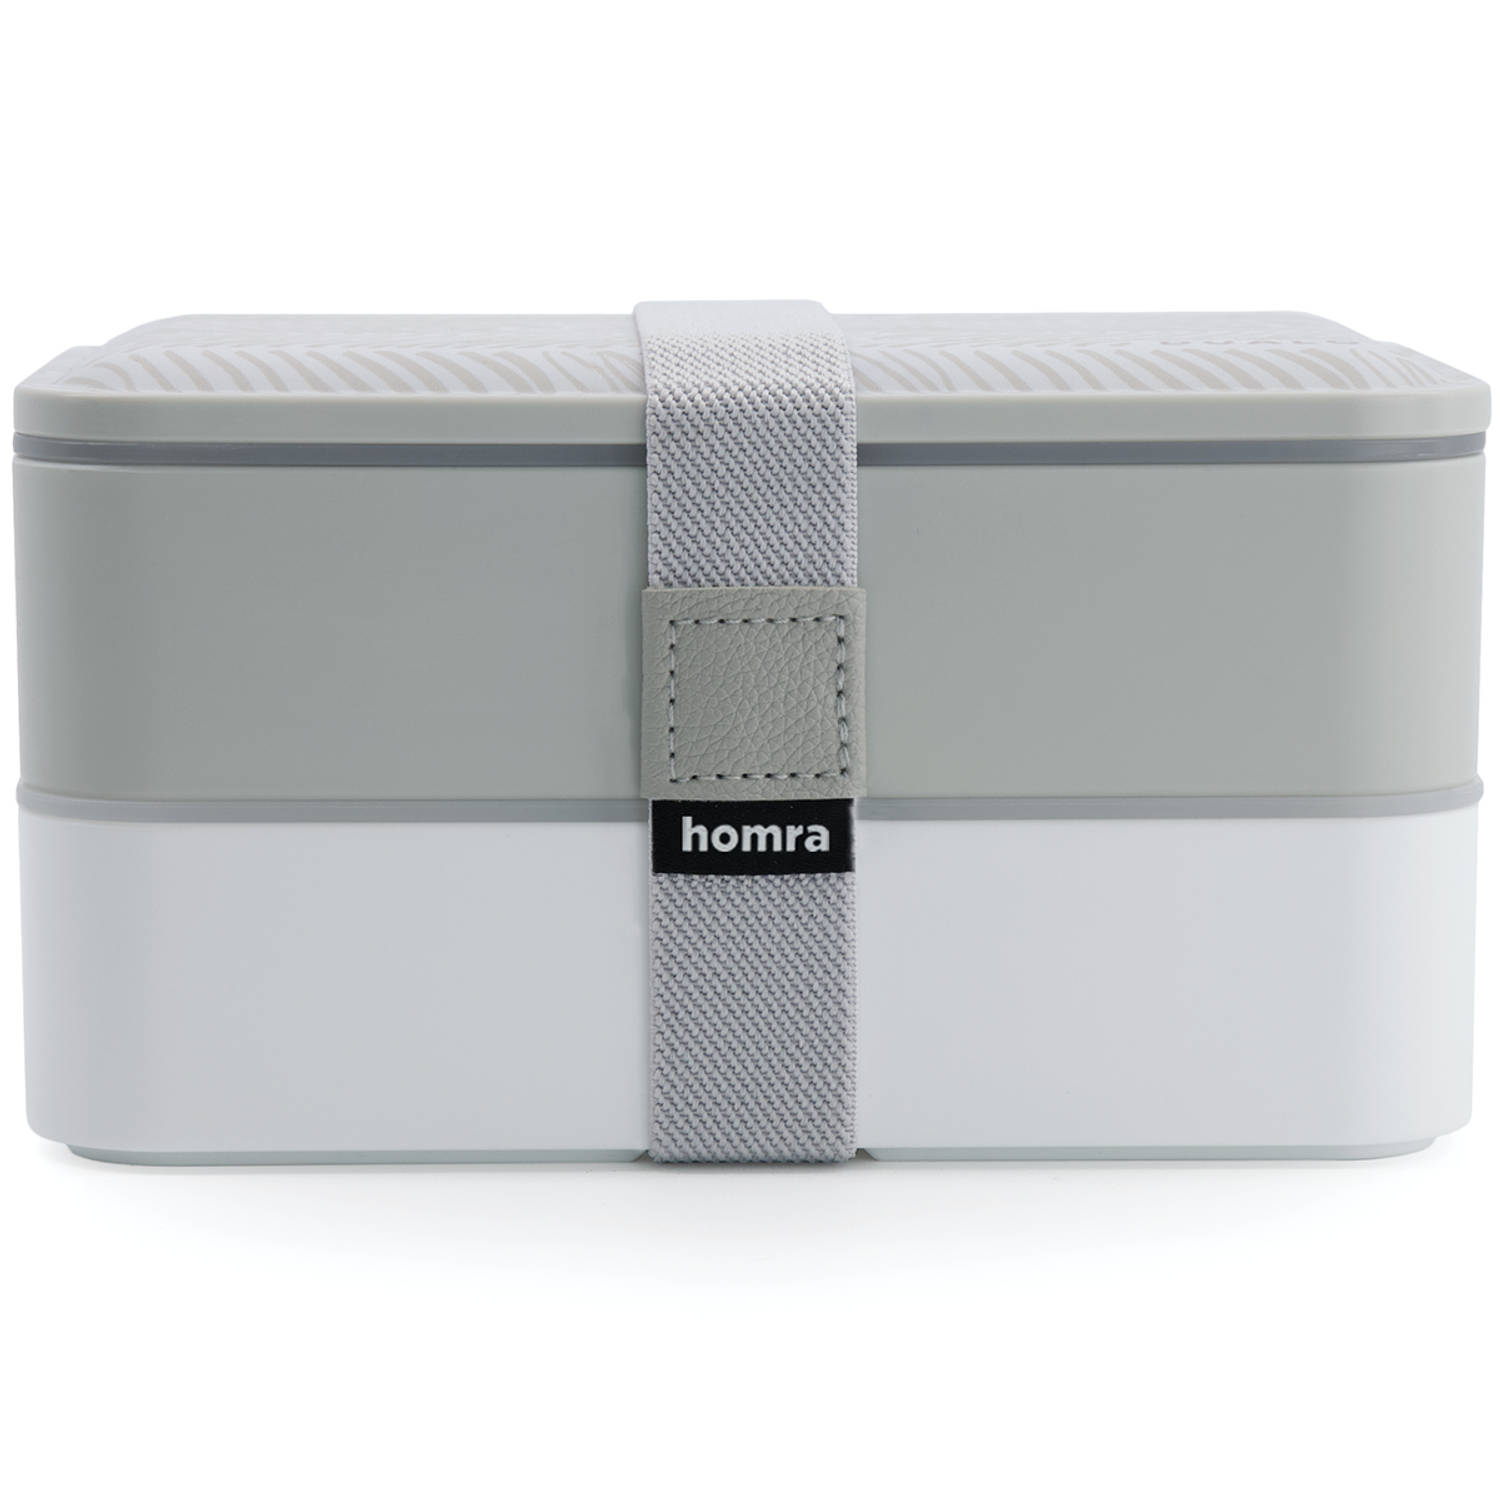 Homra Lunchbox DUALO Stripes - 2 Laags Broodtrommel - 2 Compartimenten - Lunch To Go - Duurzaam Kunststof - BPA vrij - Lunchtrommel - Inclusief Bestek - Magnetronbestendig - Diepvr